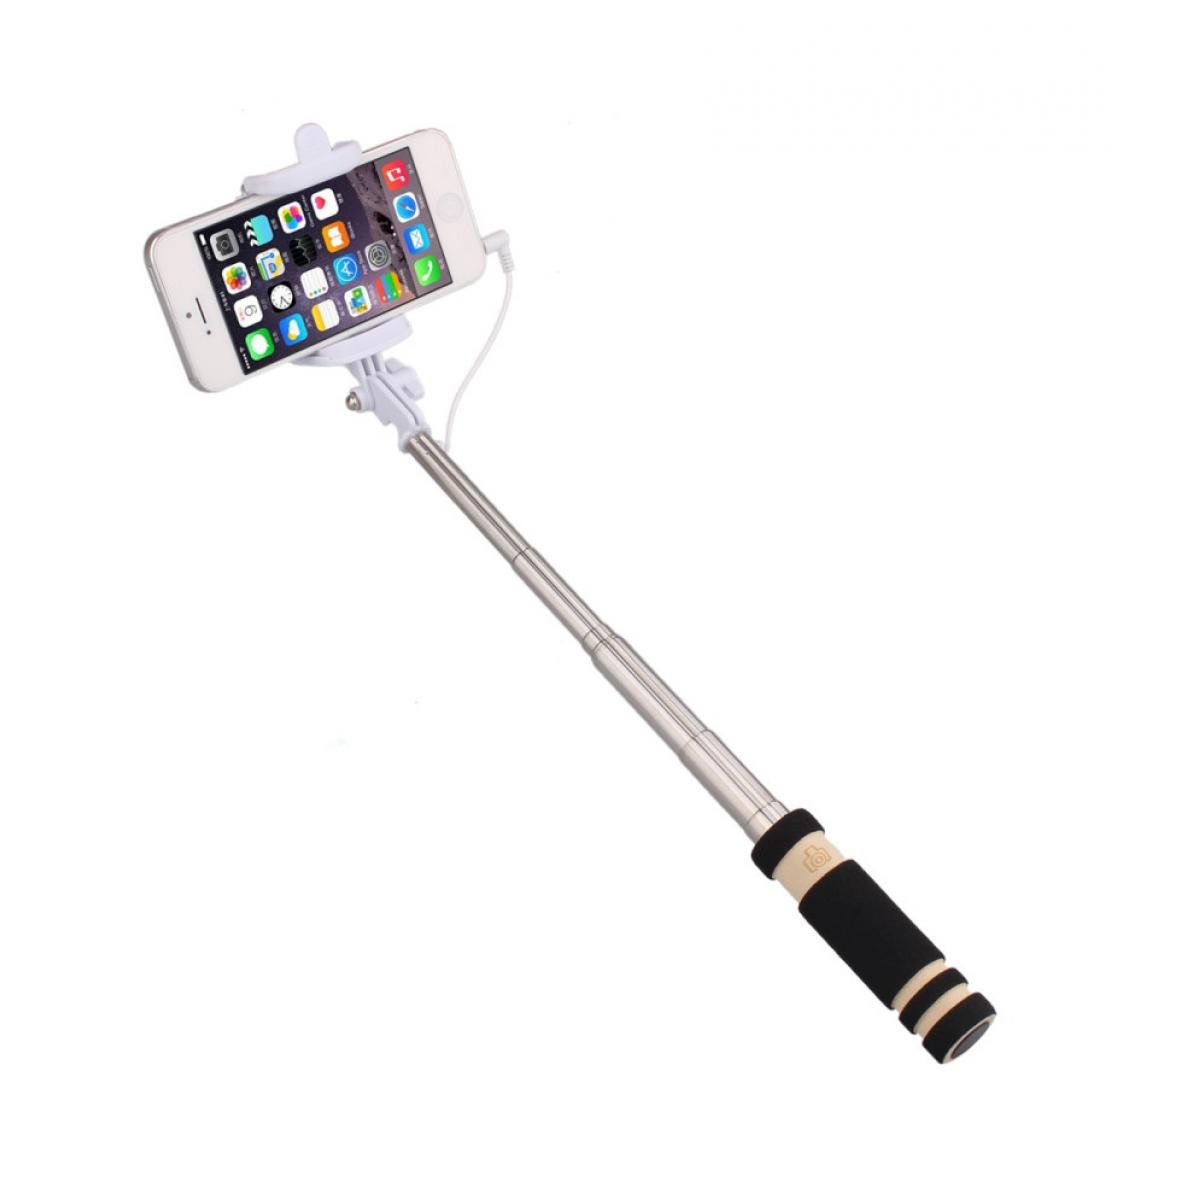 Shot - Mini Perche Selfie pour "SAMSUNG Galaxy A31" Smartphone avec Cable Jack Selfie Stick Android IOS Reglable Bouton Photo (NOIR) - Autres accessoires smartphone